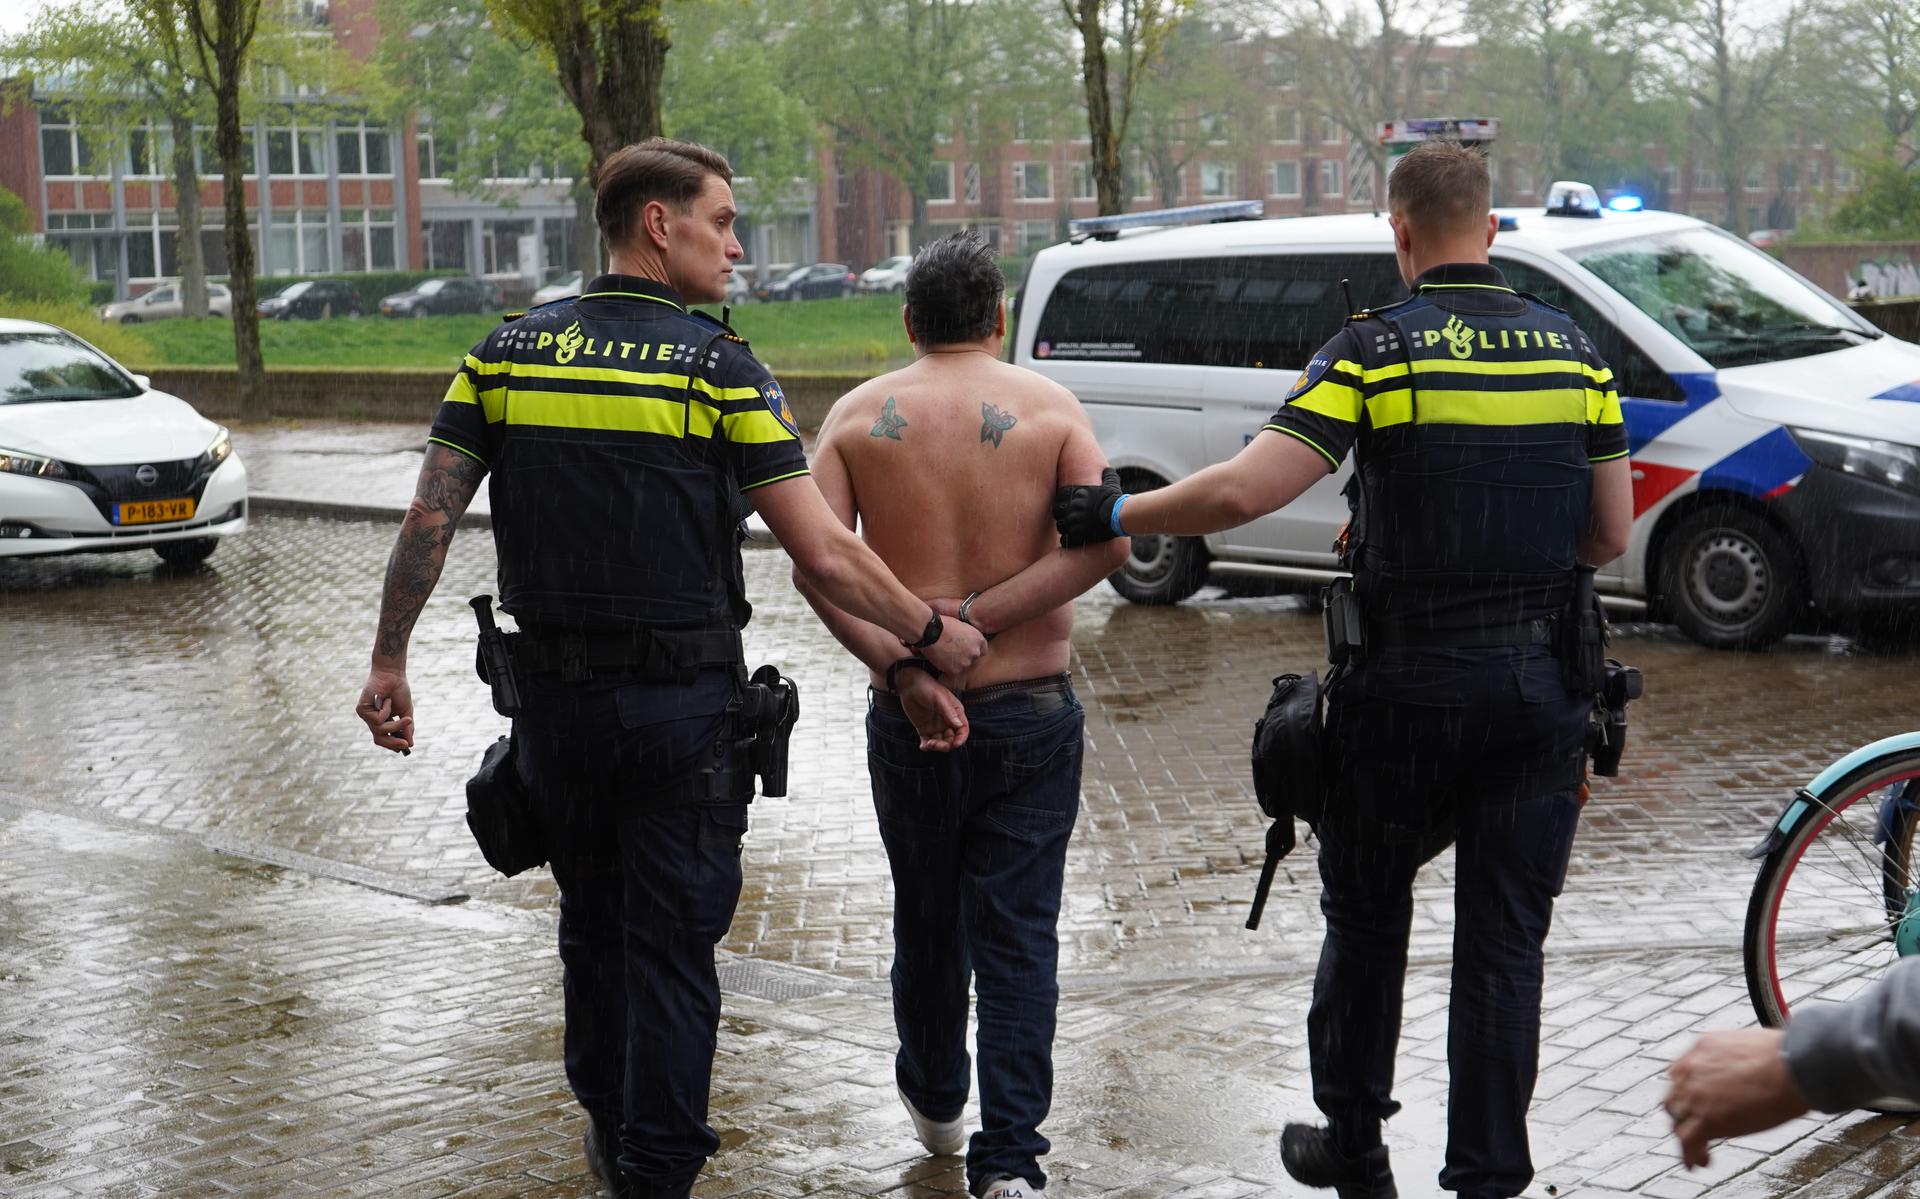 De politie heeft na een vechtpartij bij de supermarkt in Groningen een man aangehouden.